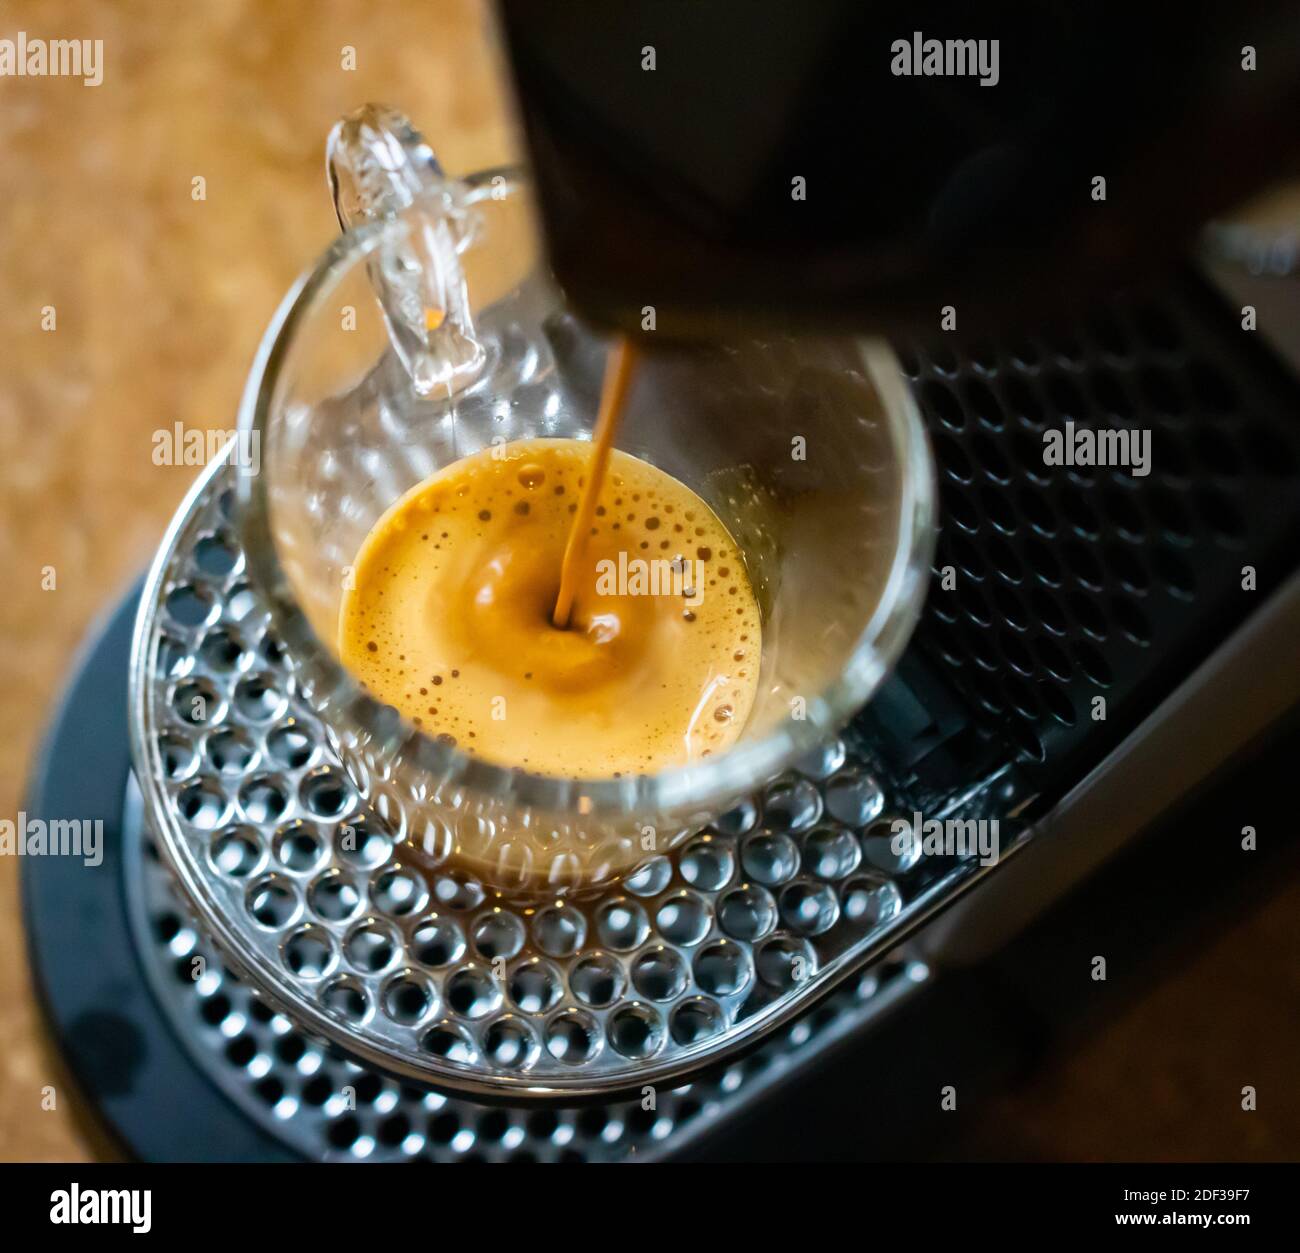 Préparation du café espresso à partir d'une machine à café espresso italienne typique Banque D'Images